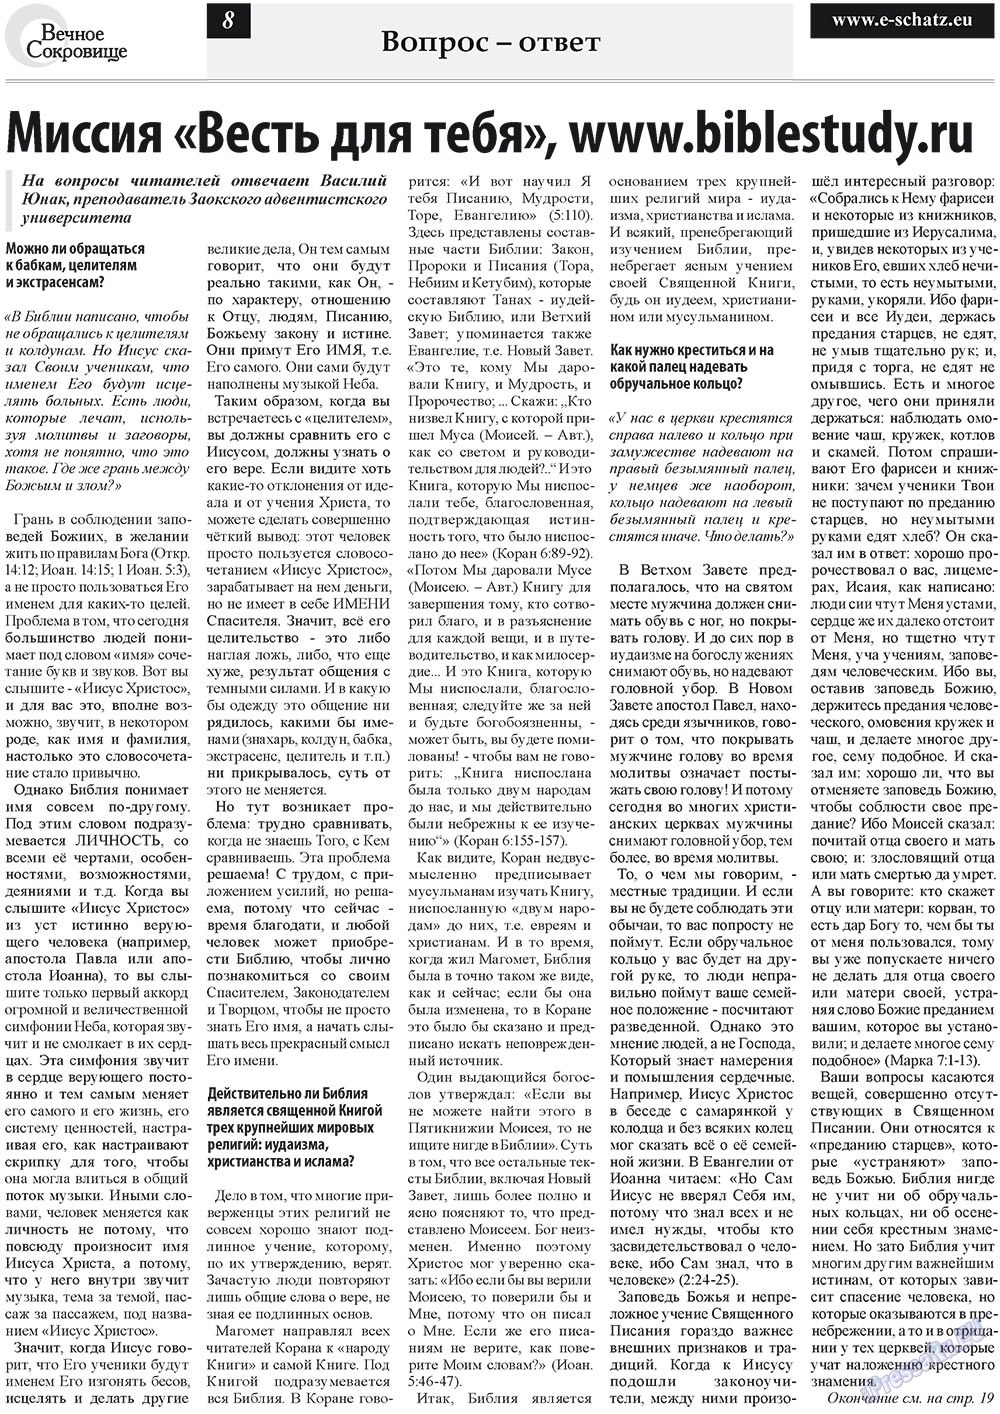 Вечное сокровище (газета). 2010 год, номер 4, стр. 8